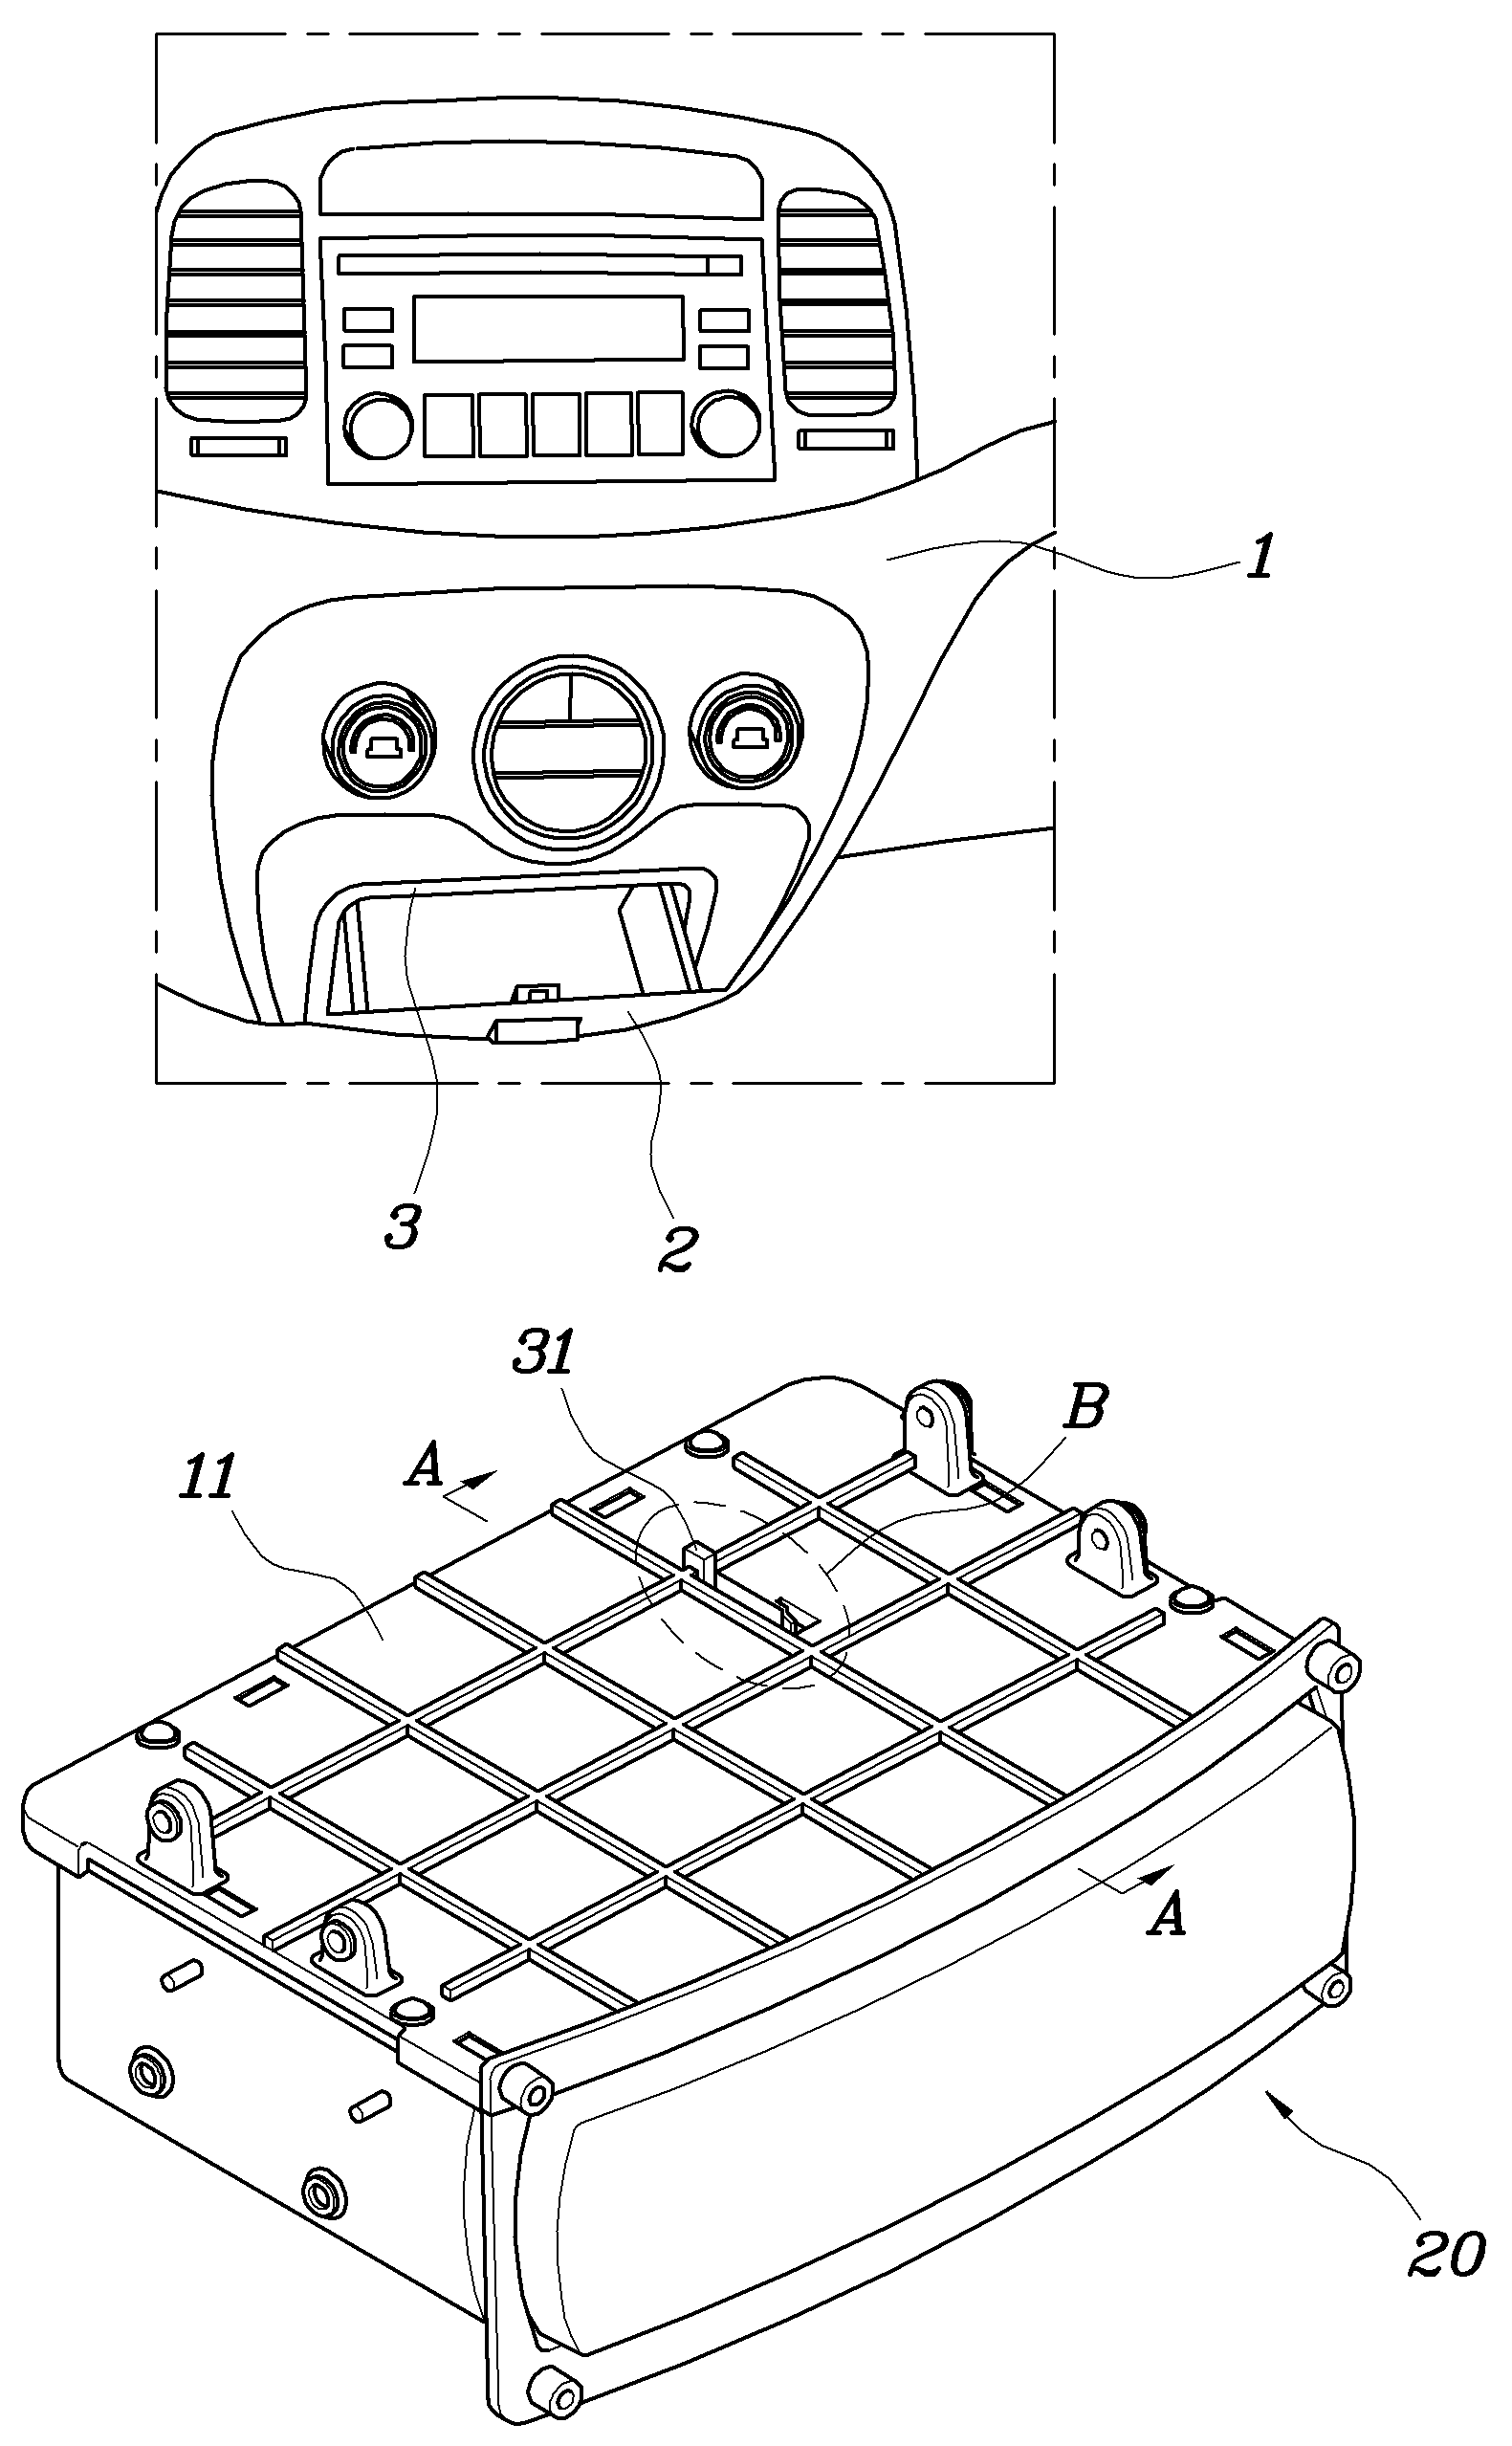 Tray apparatus